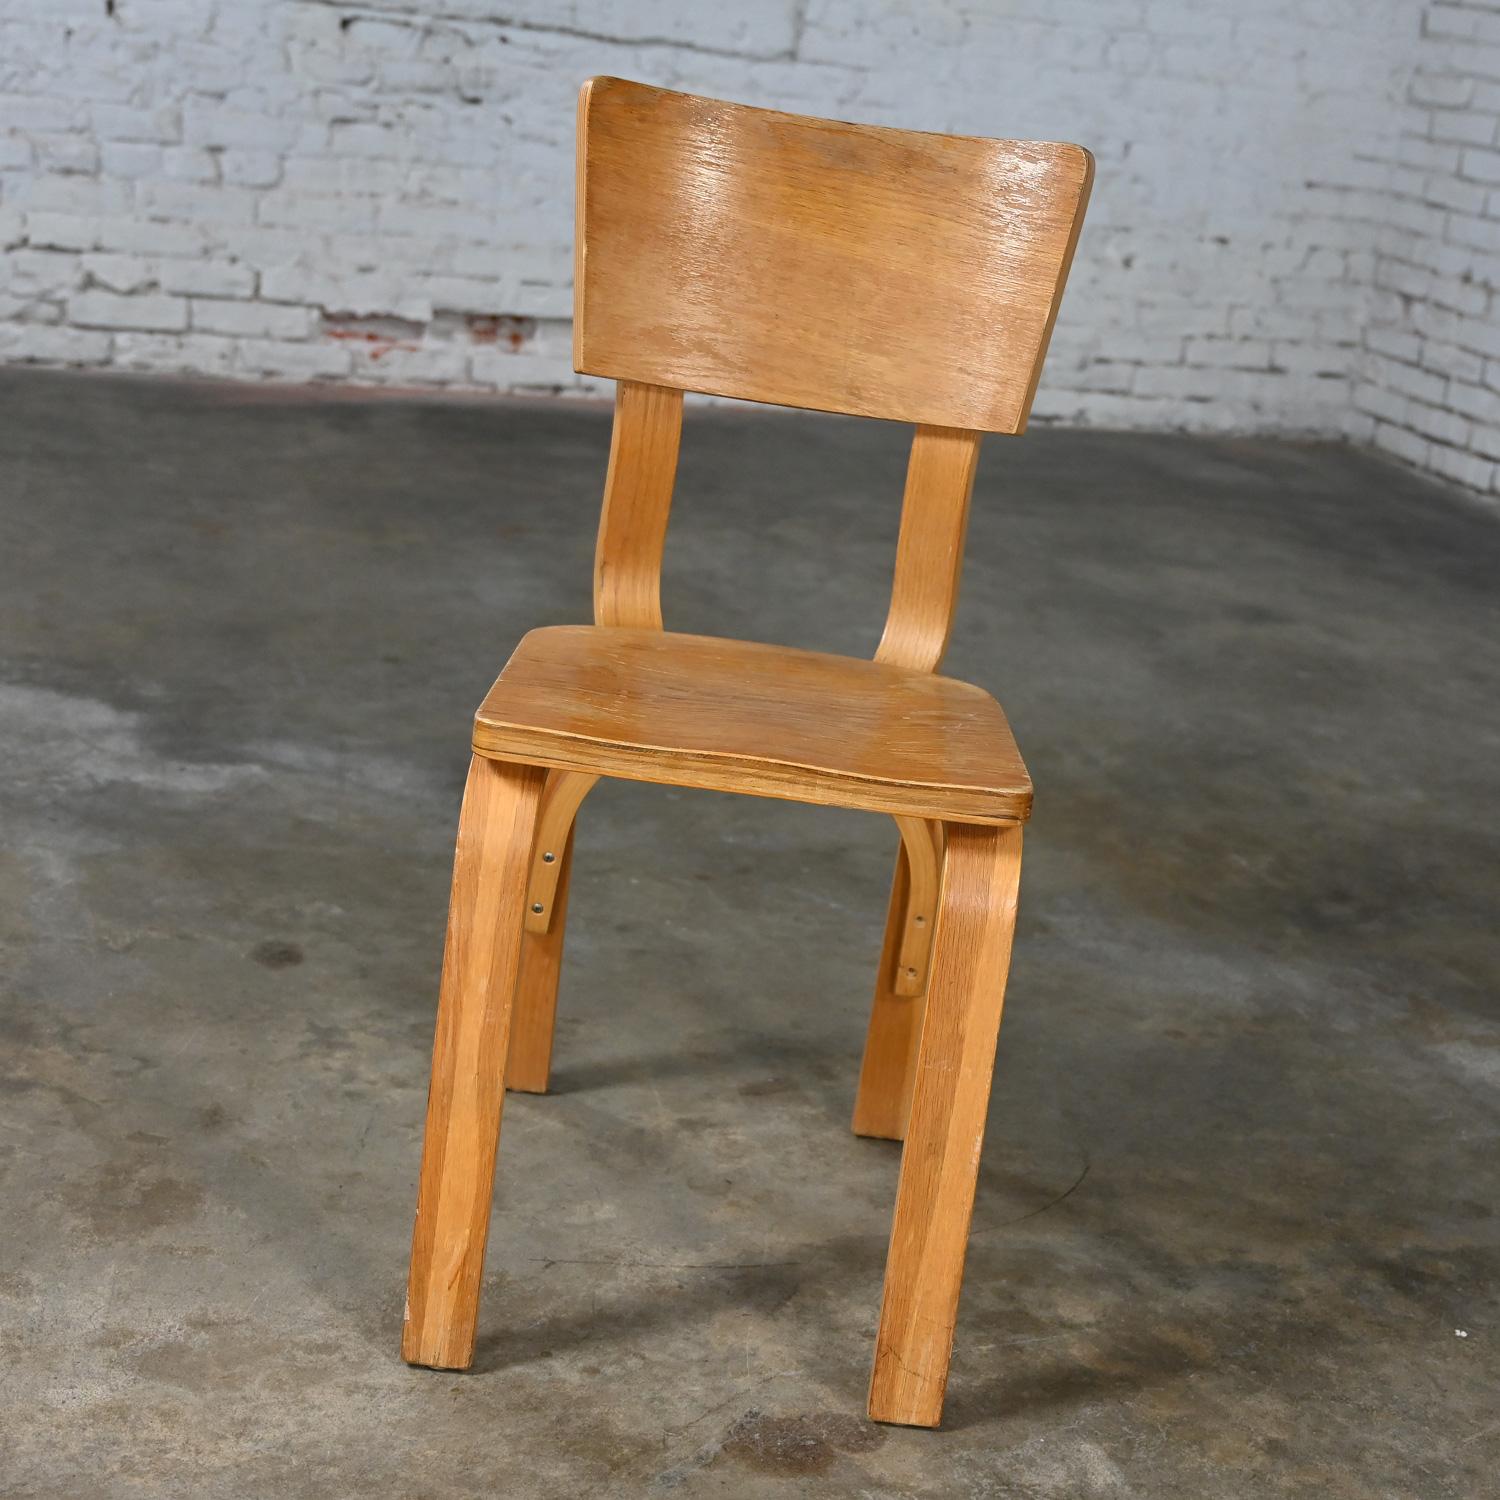 Handsome Vintage Mid-Century Modern Thonet #1216-S17-B1 Esszimmerstühle aus gebogenen Eiche Sperrholz mit Sattel Sitze und einen einzigen Bogen zurück Bahre 15 zur Verfügung, separat zu verkaufen & preislich pro Stuhl, wie ist Zustand. Siehe Hinweis